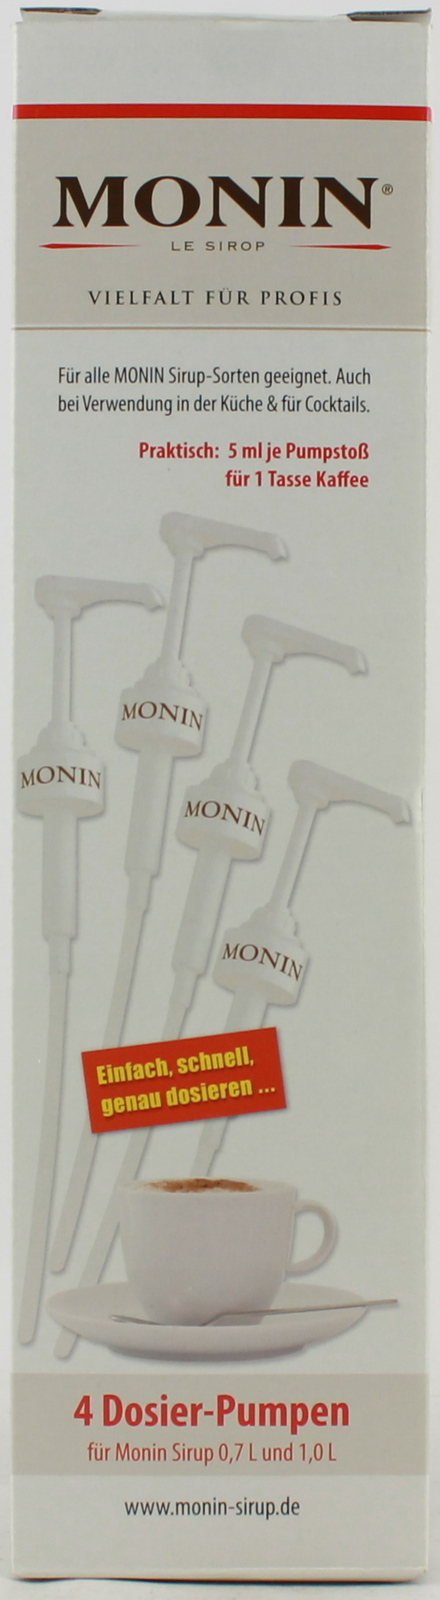 Monin Dosier-Pumpen für Monin Sirup 0,7 L und 1,0 Liter 4er Pack 